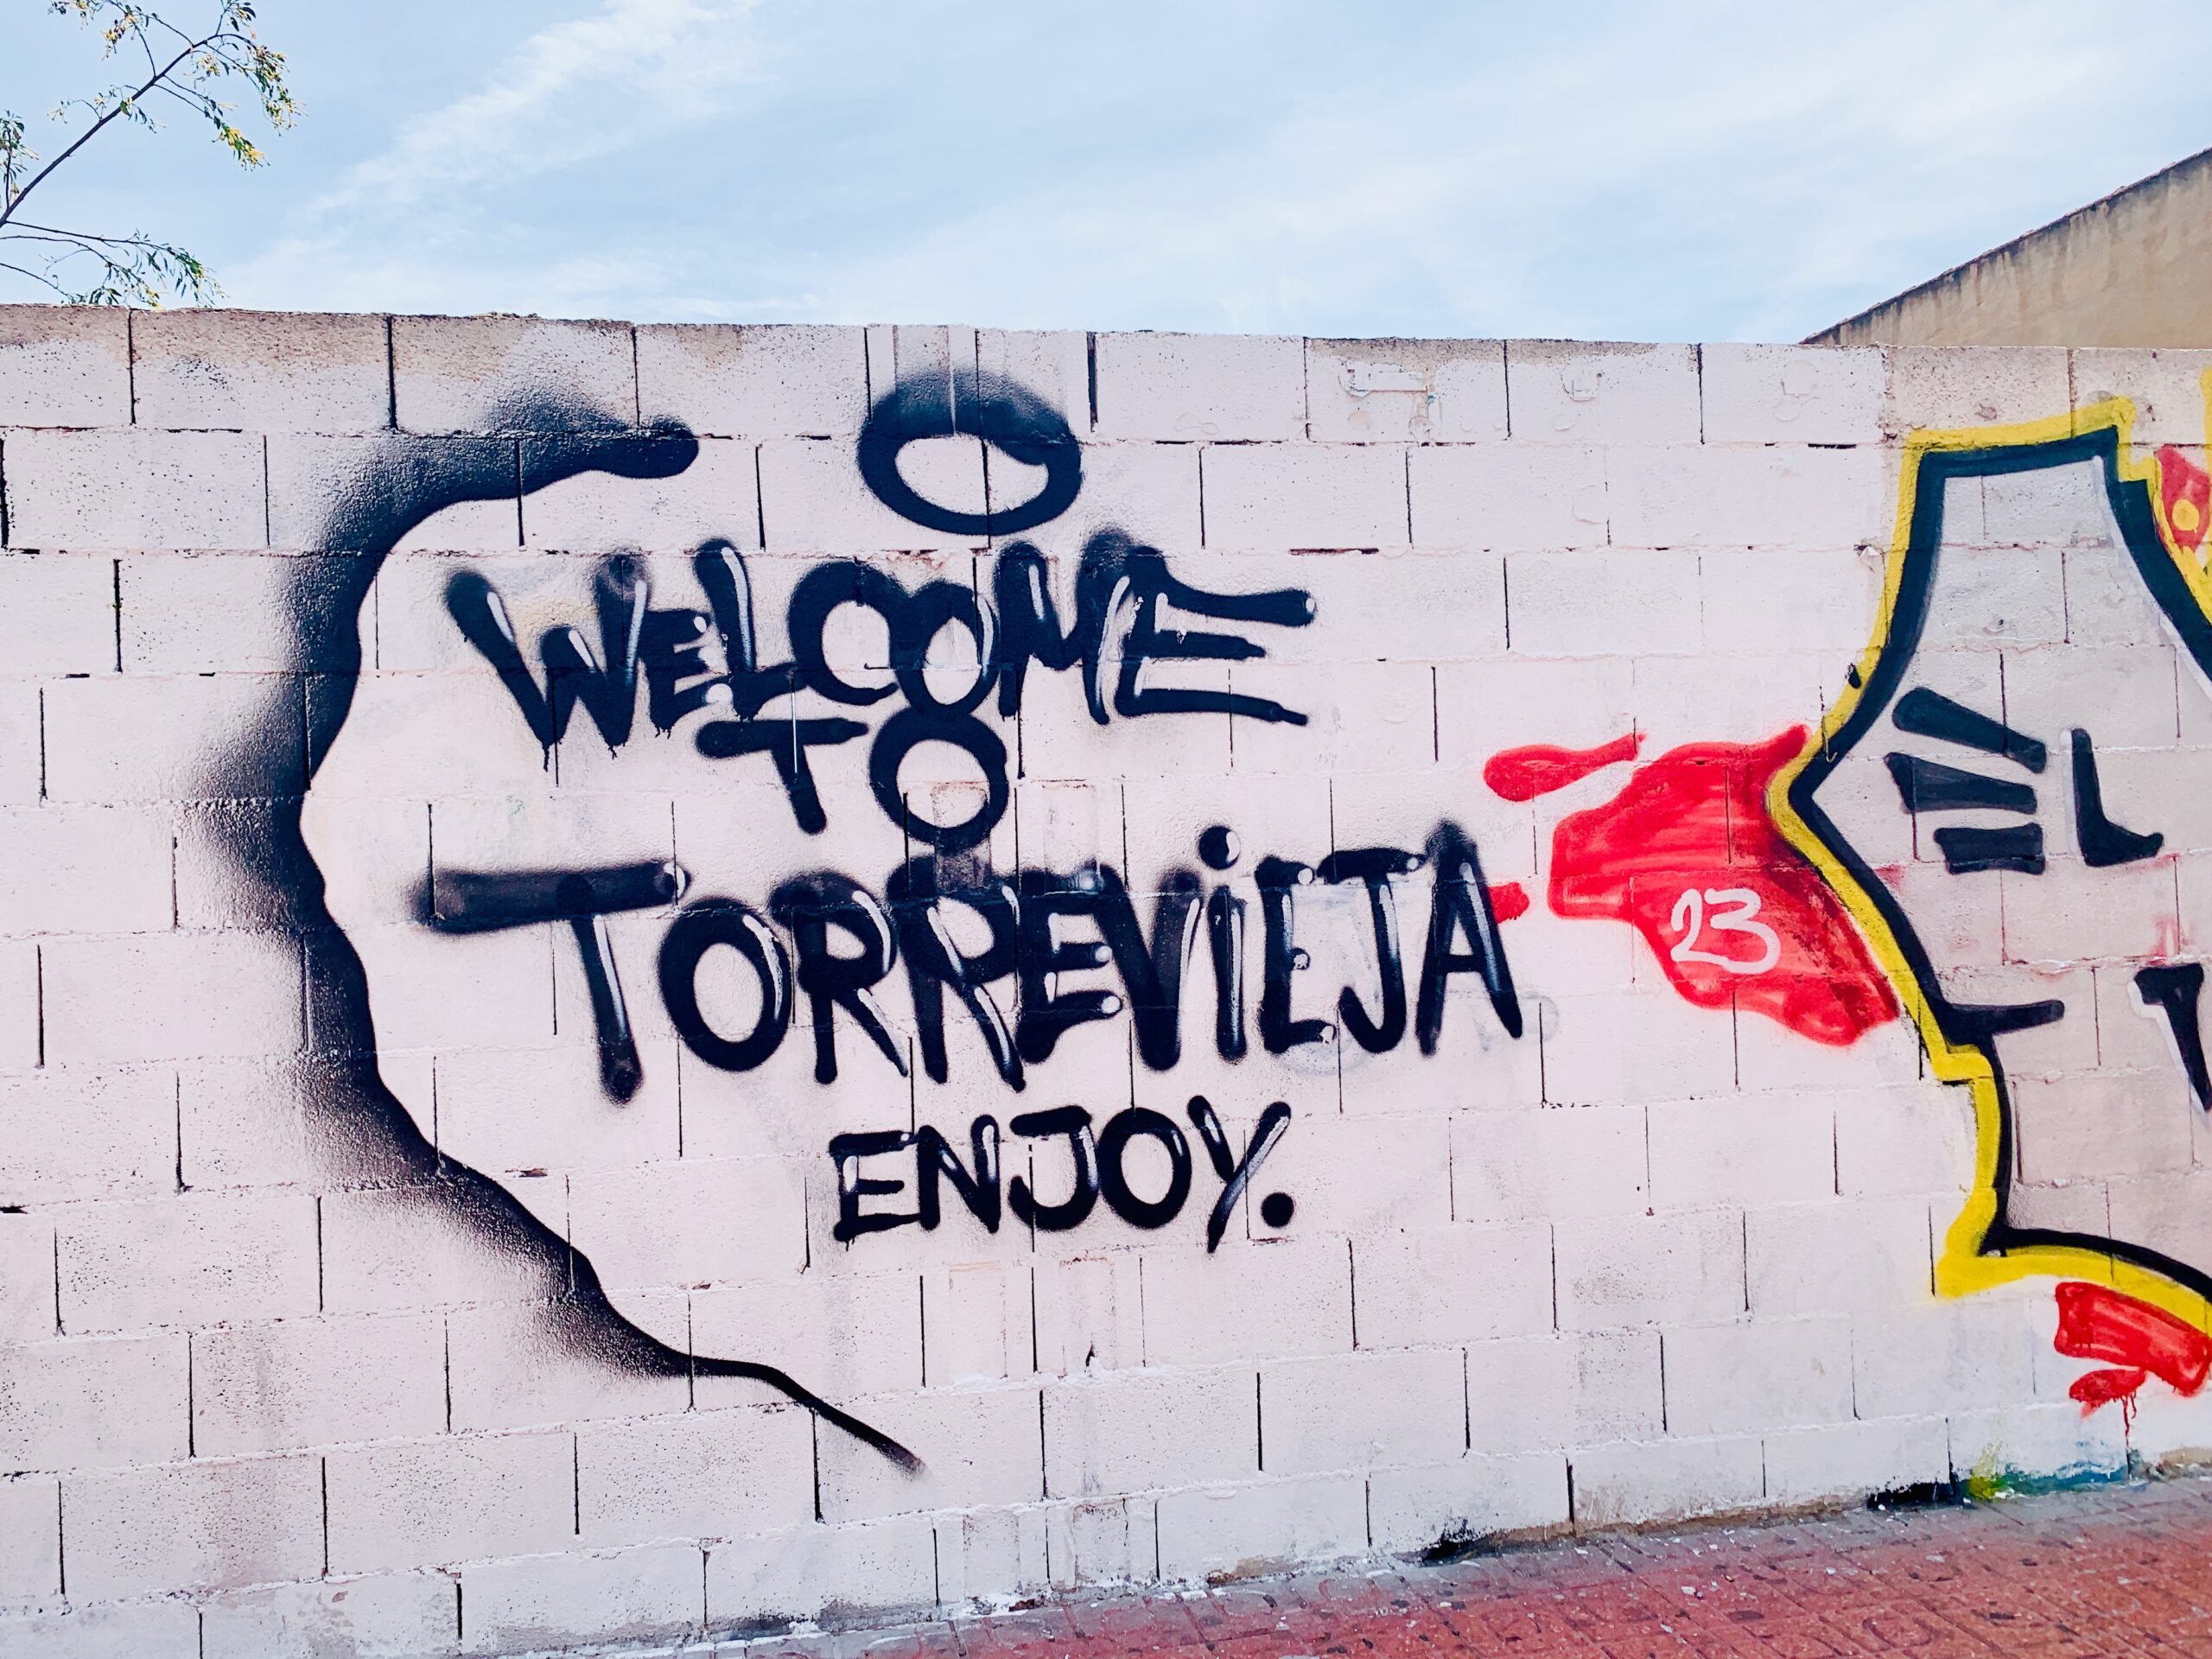 Espanja Torrevieja kokemuksia 